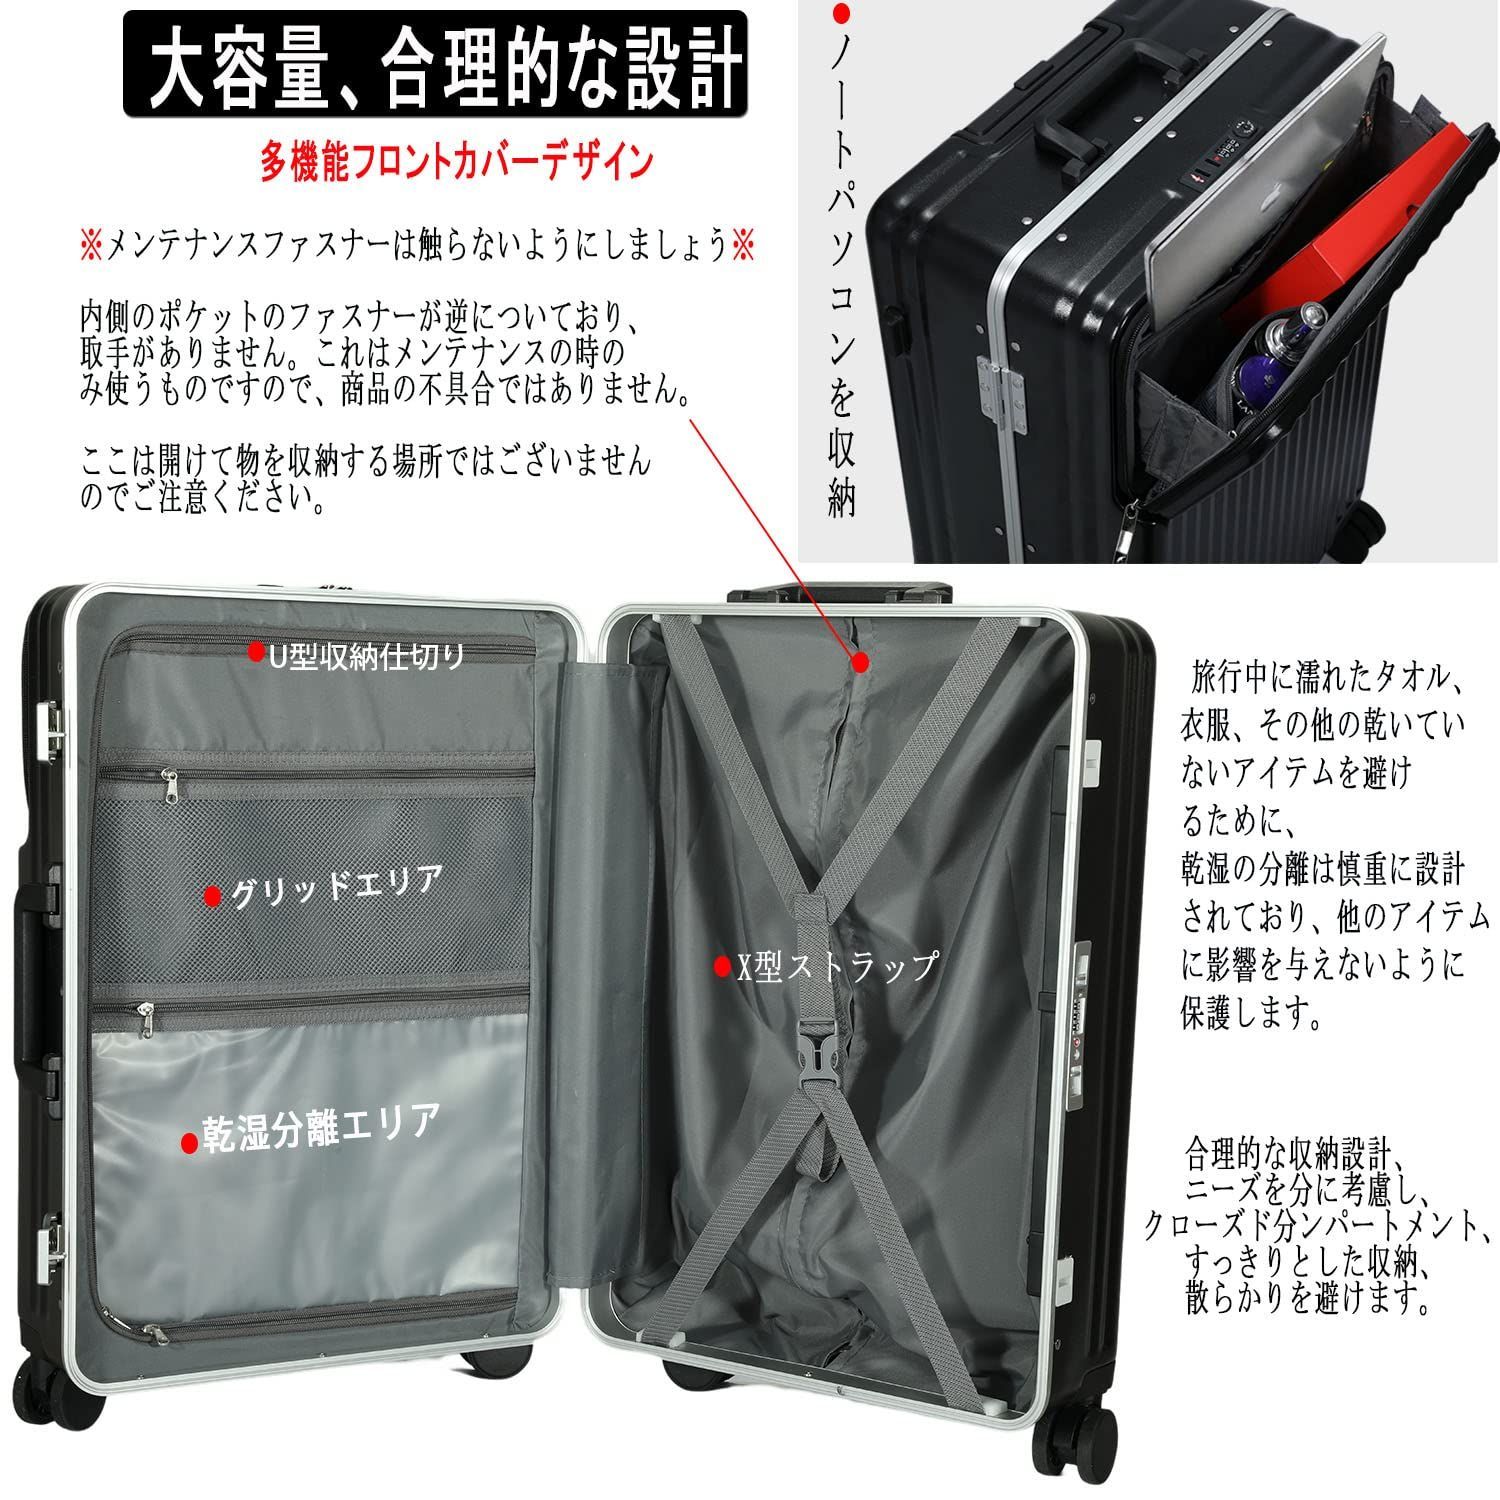 Ashard スーツケース アルミフレーム sサイズ 42L ブラック 超軽量